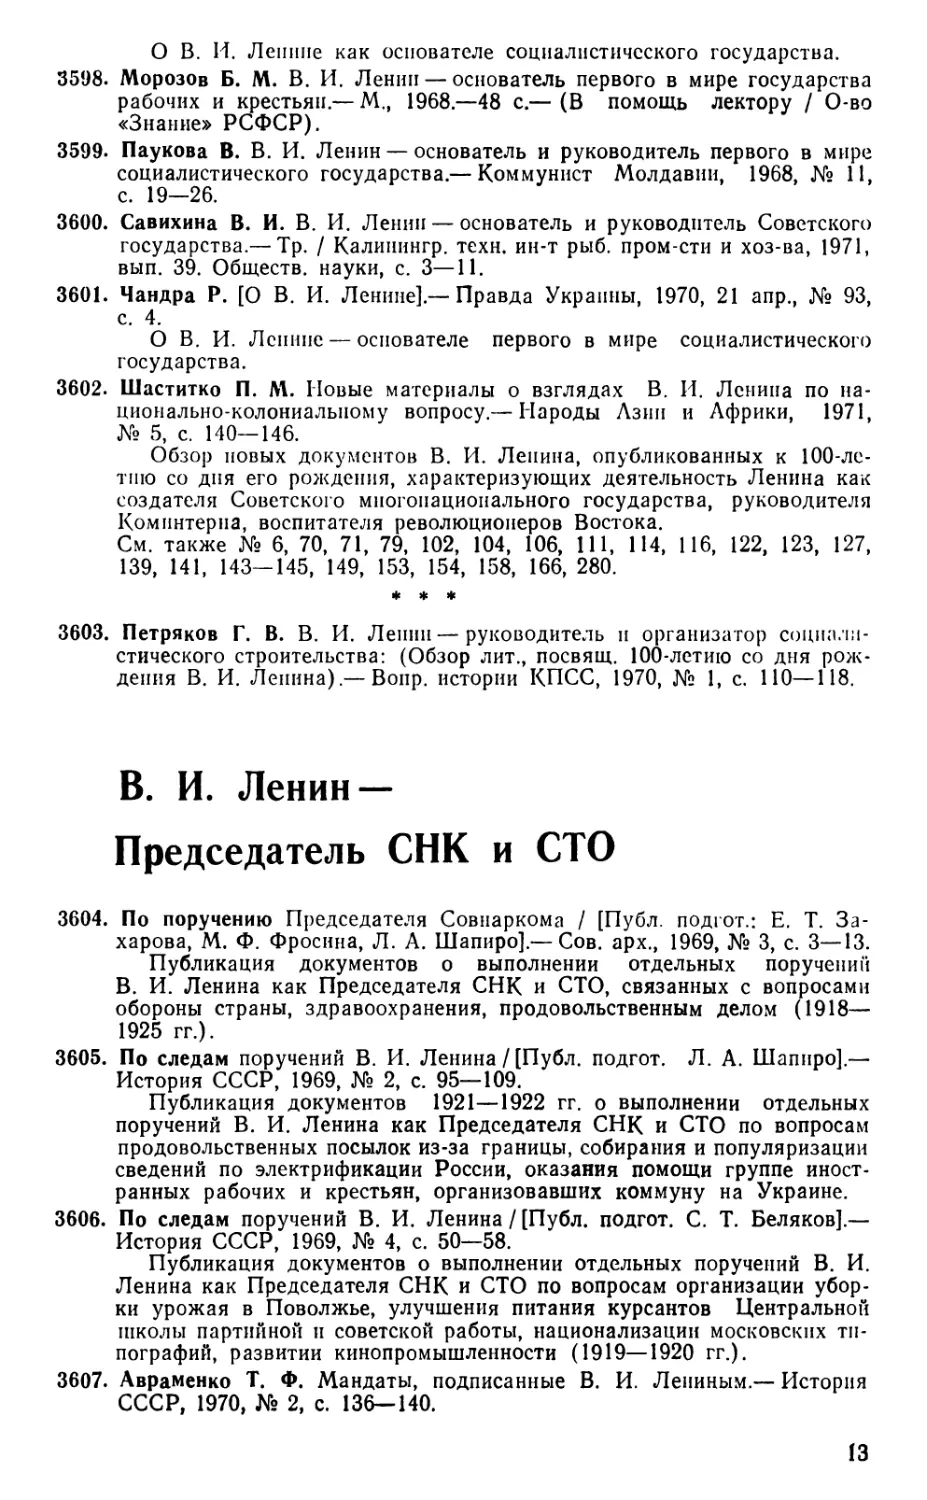 В. И. Ленин — Председатель СНК и СТО